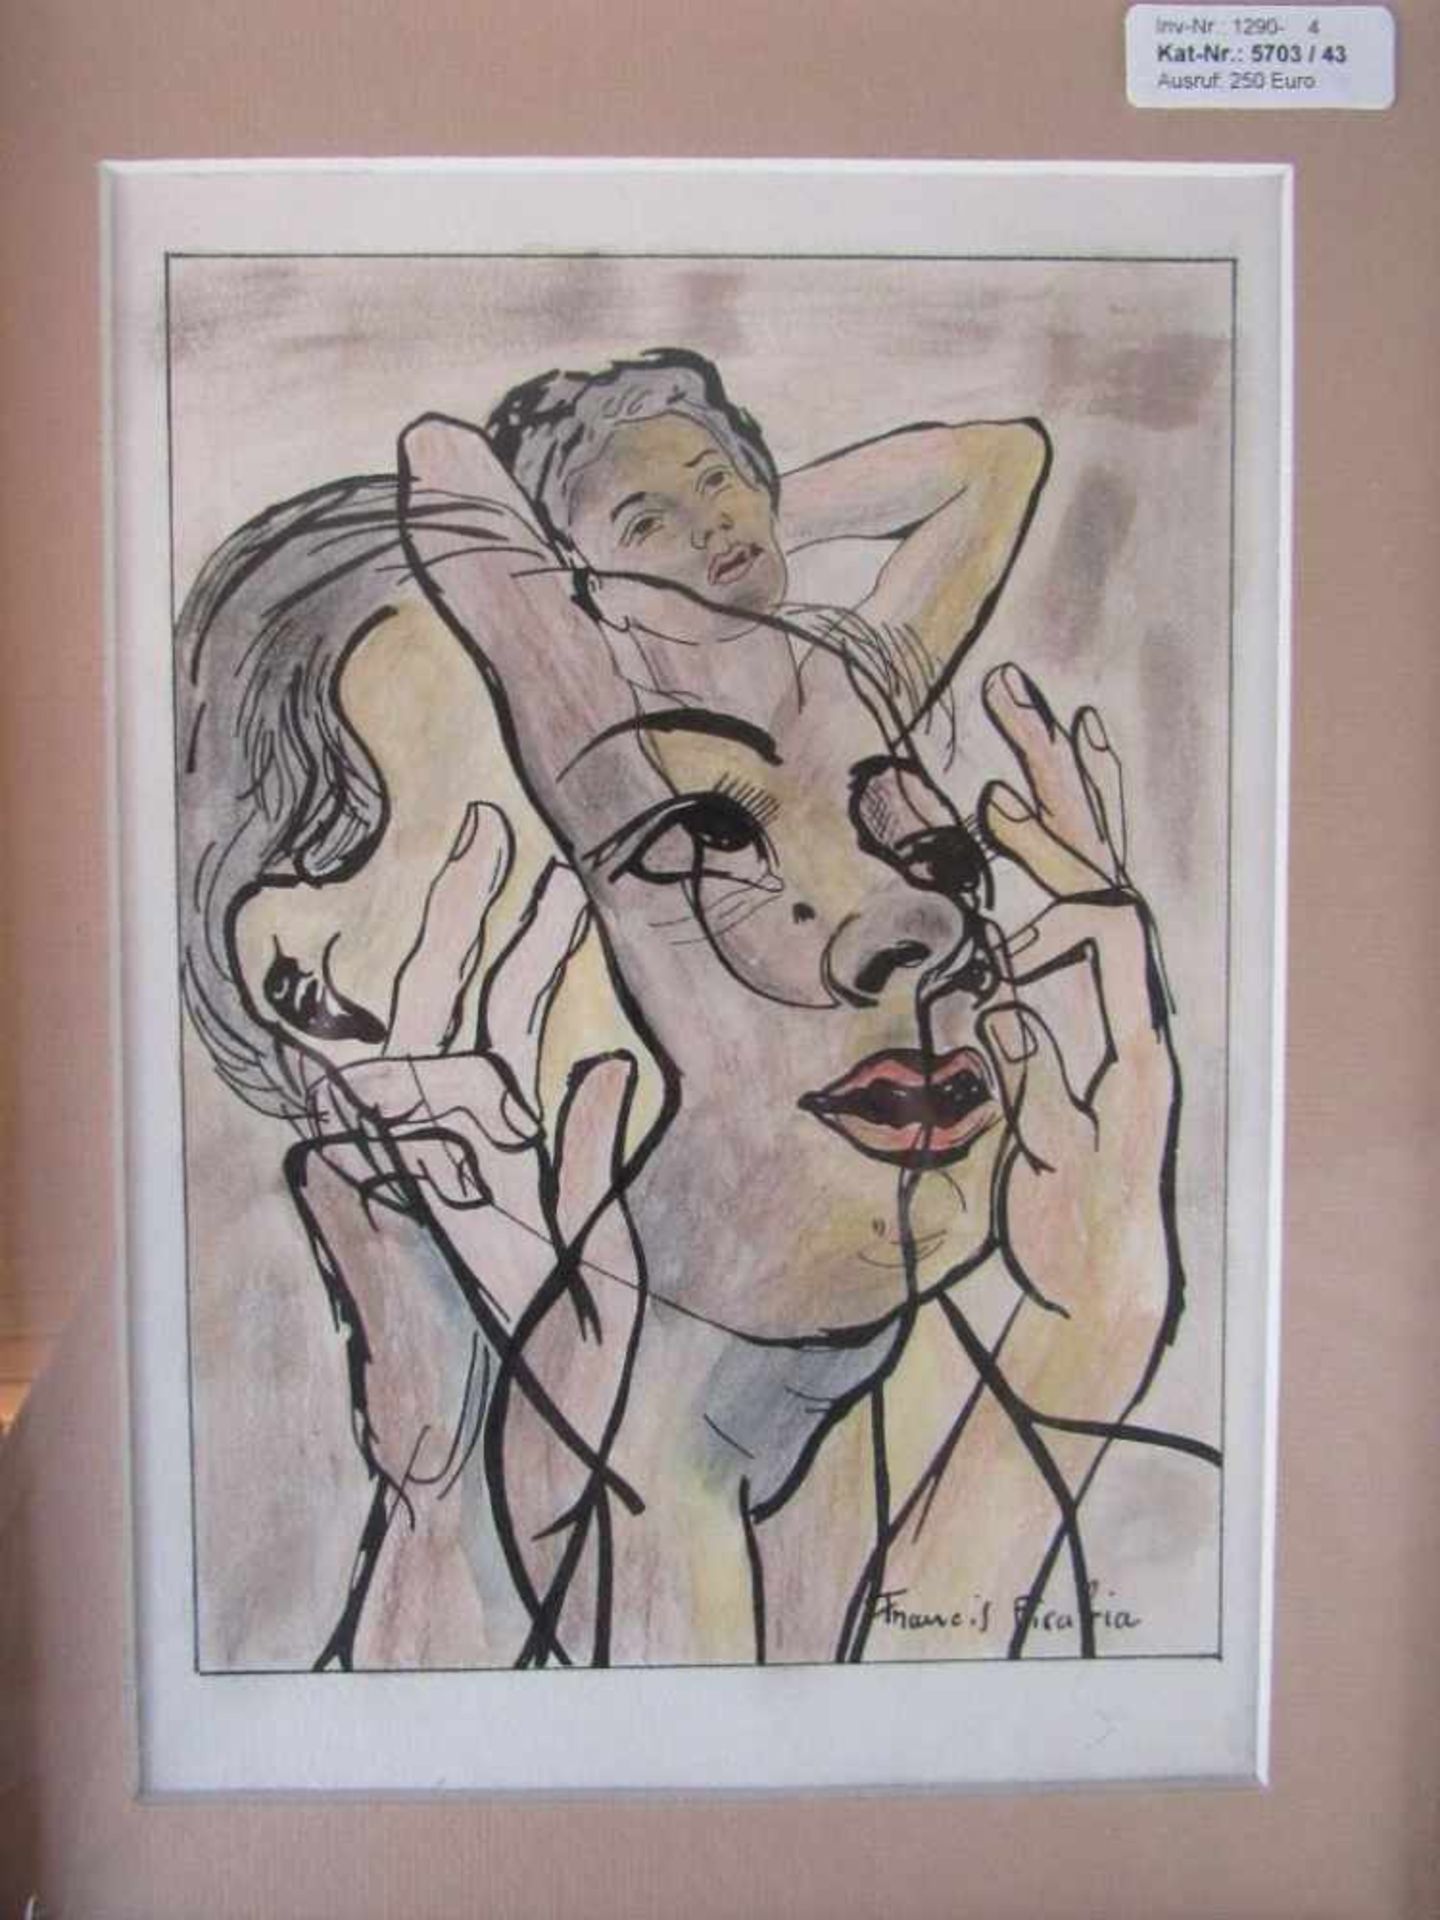 Zeichnung mit Rahmen 56x46cm bezeichnet Francis Picabia- - -20.00 % buyer's premium on the hammer - Image 2 of 5